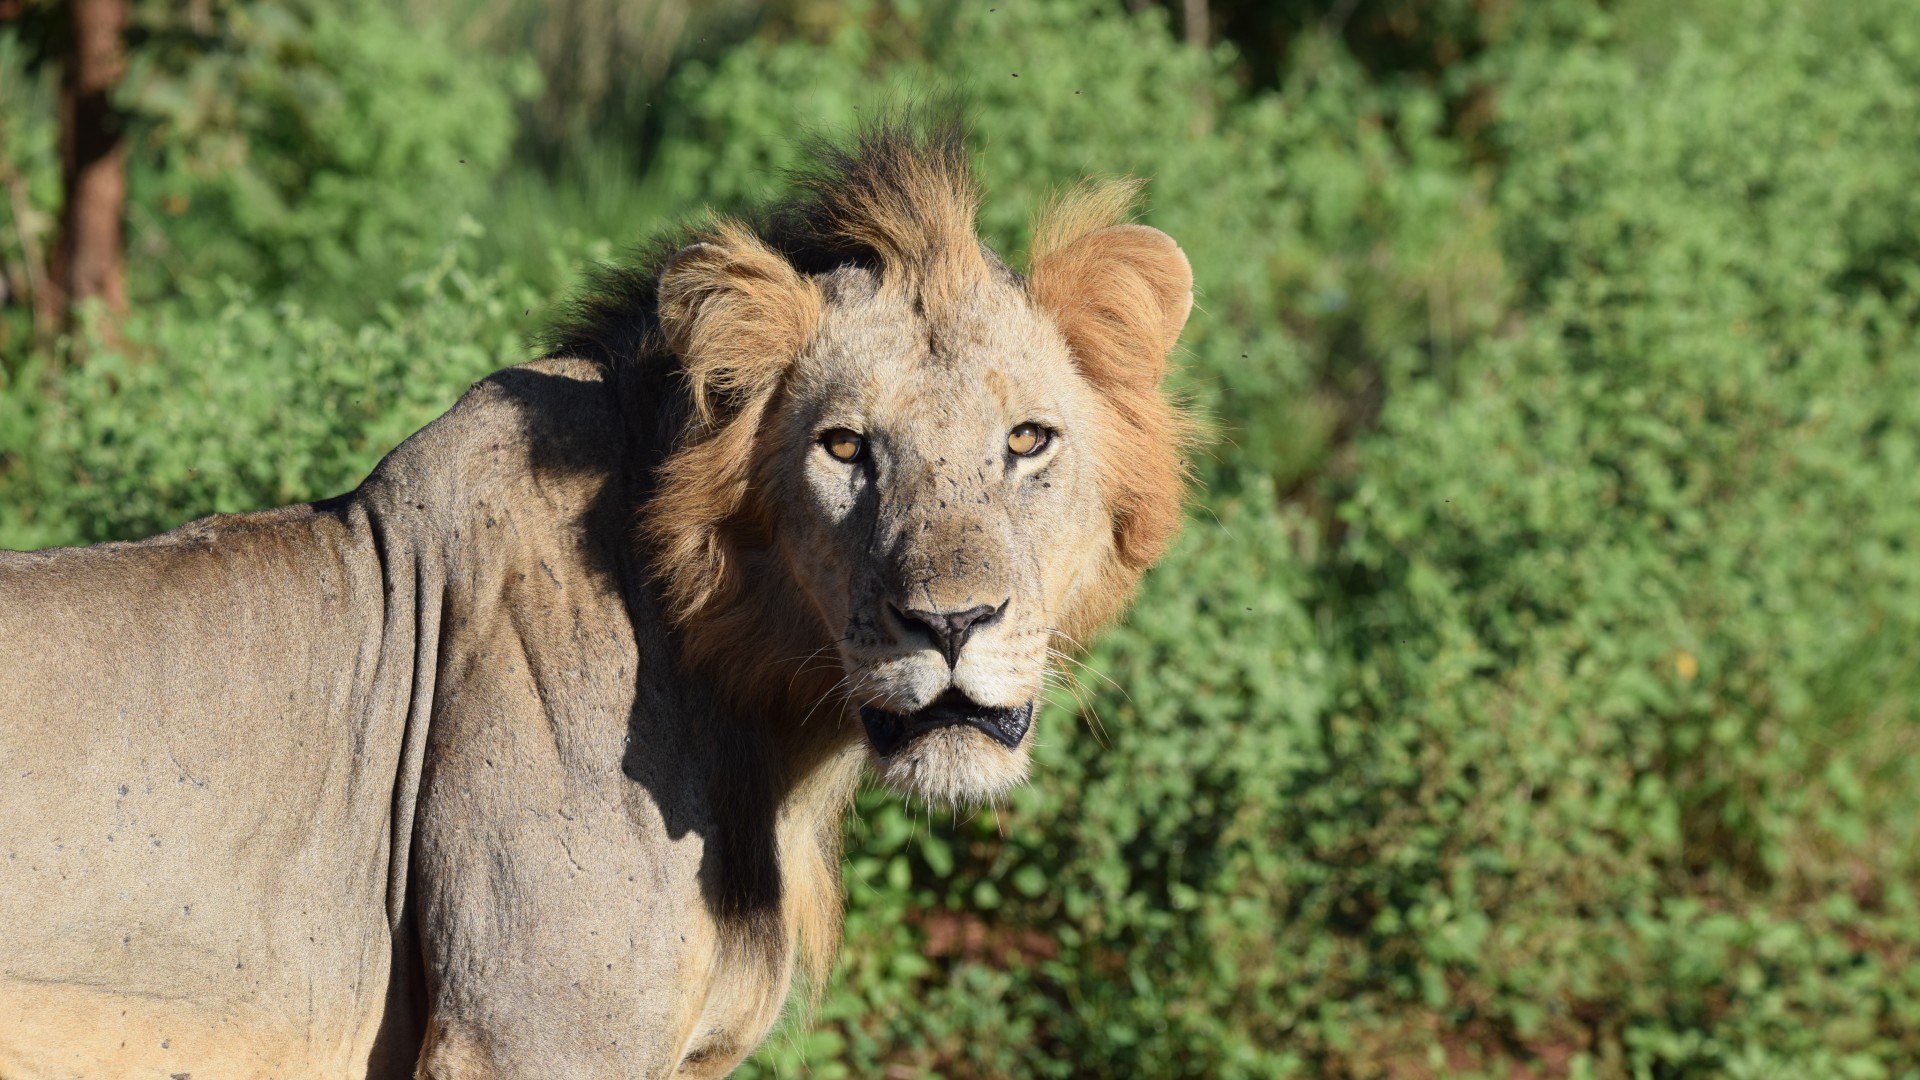 A wild male lion in Kenya